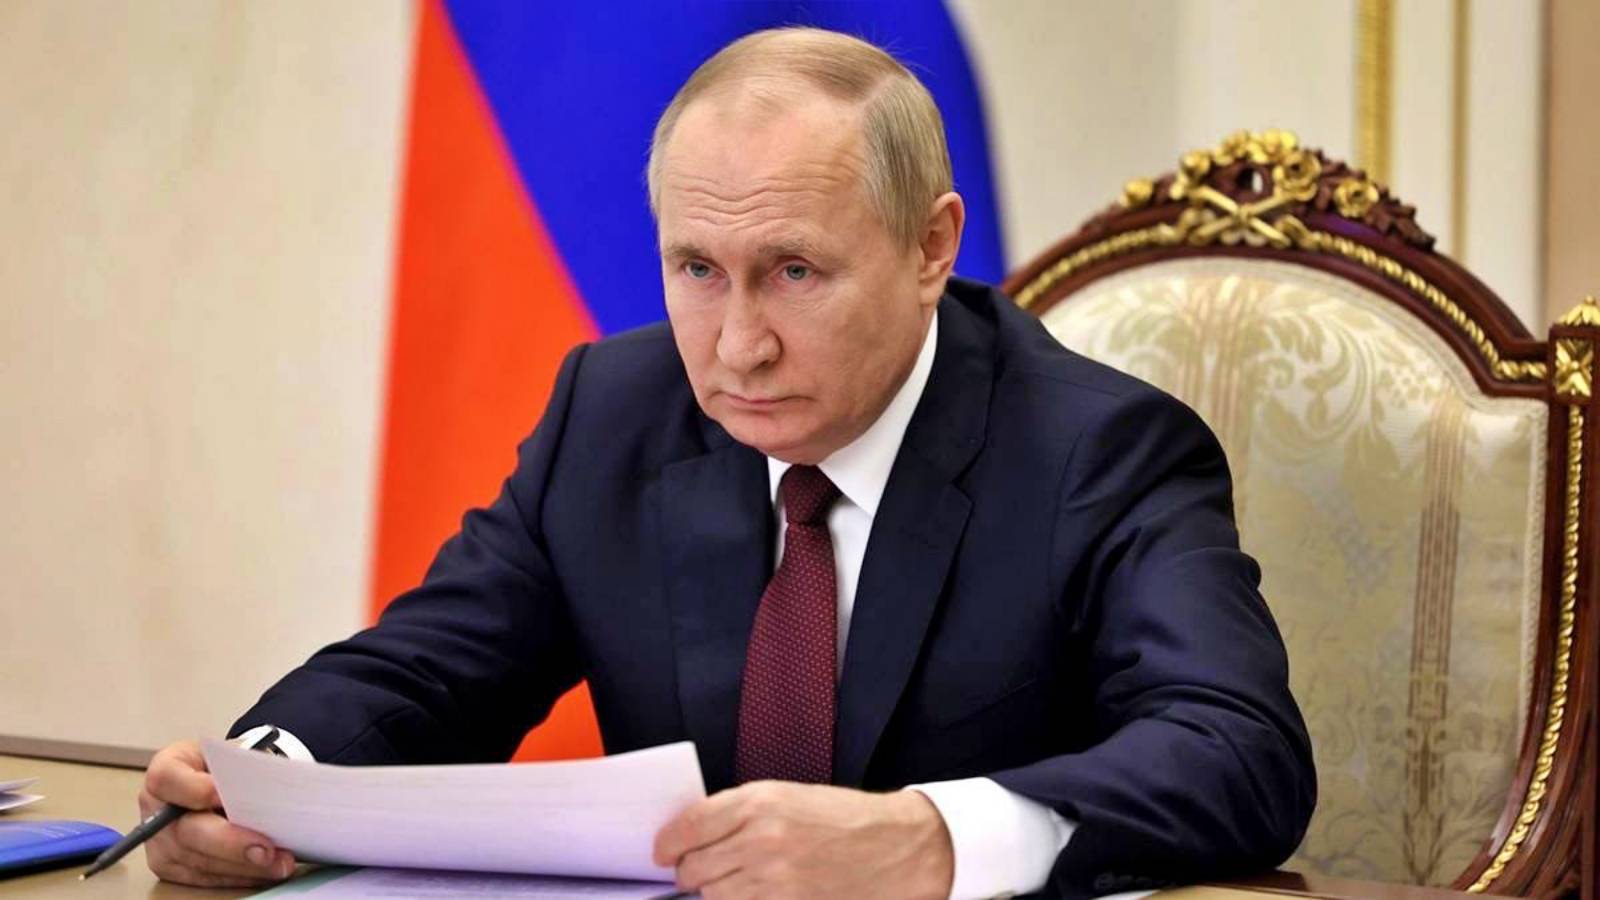 Vladimir Putin Spus Olaf Scholz Poate face Vrea Ucraina